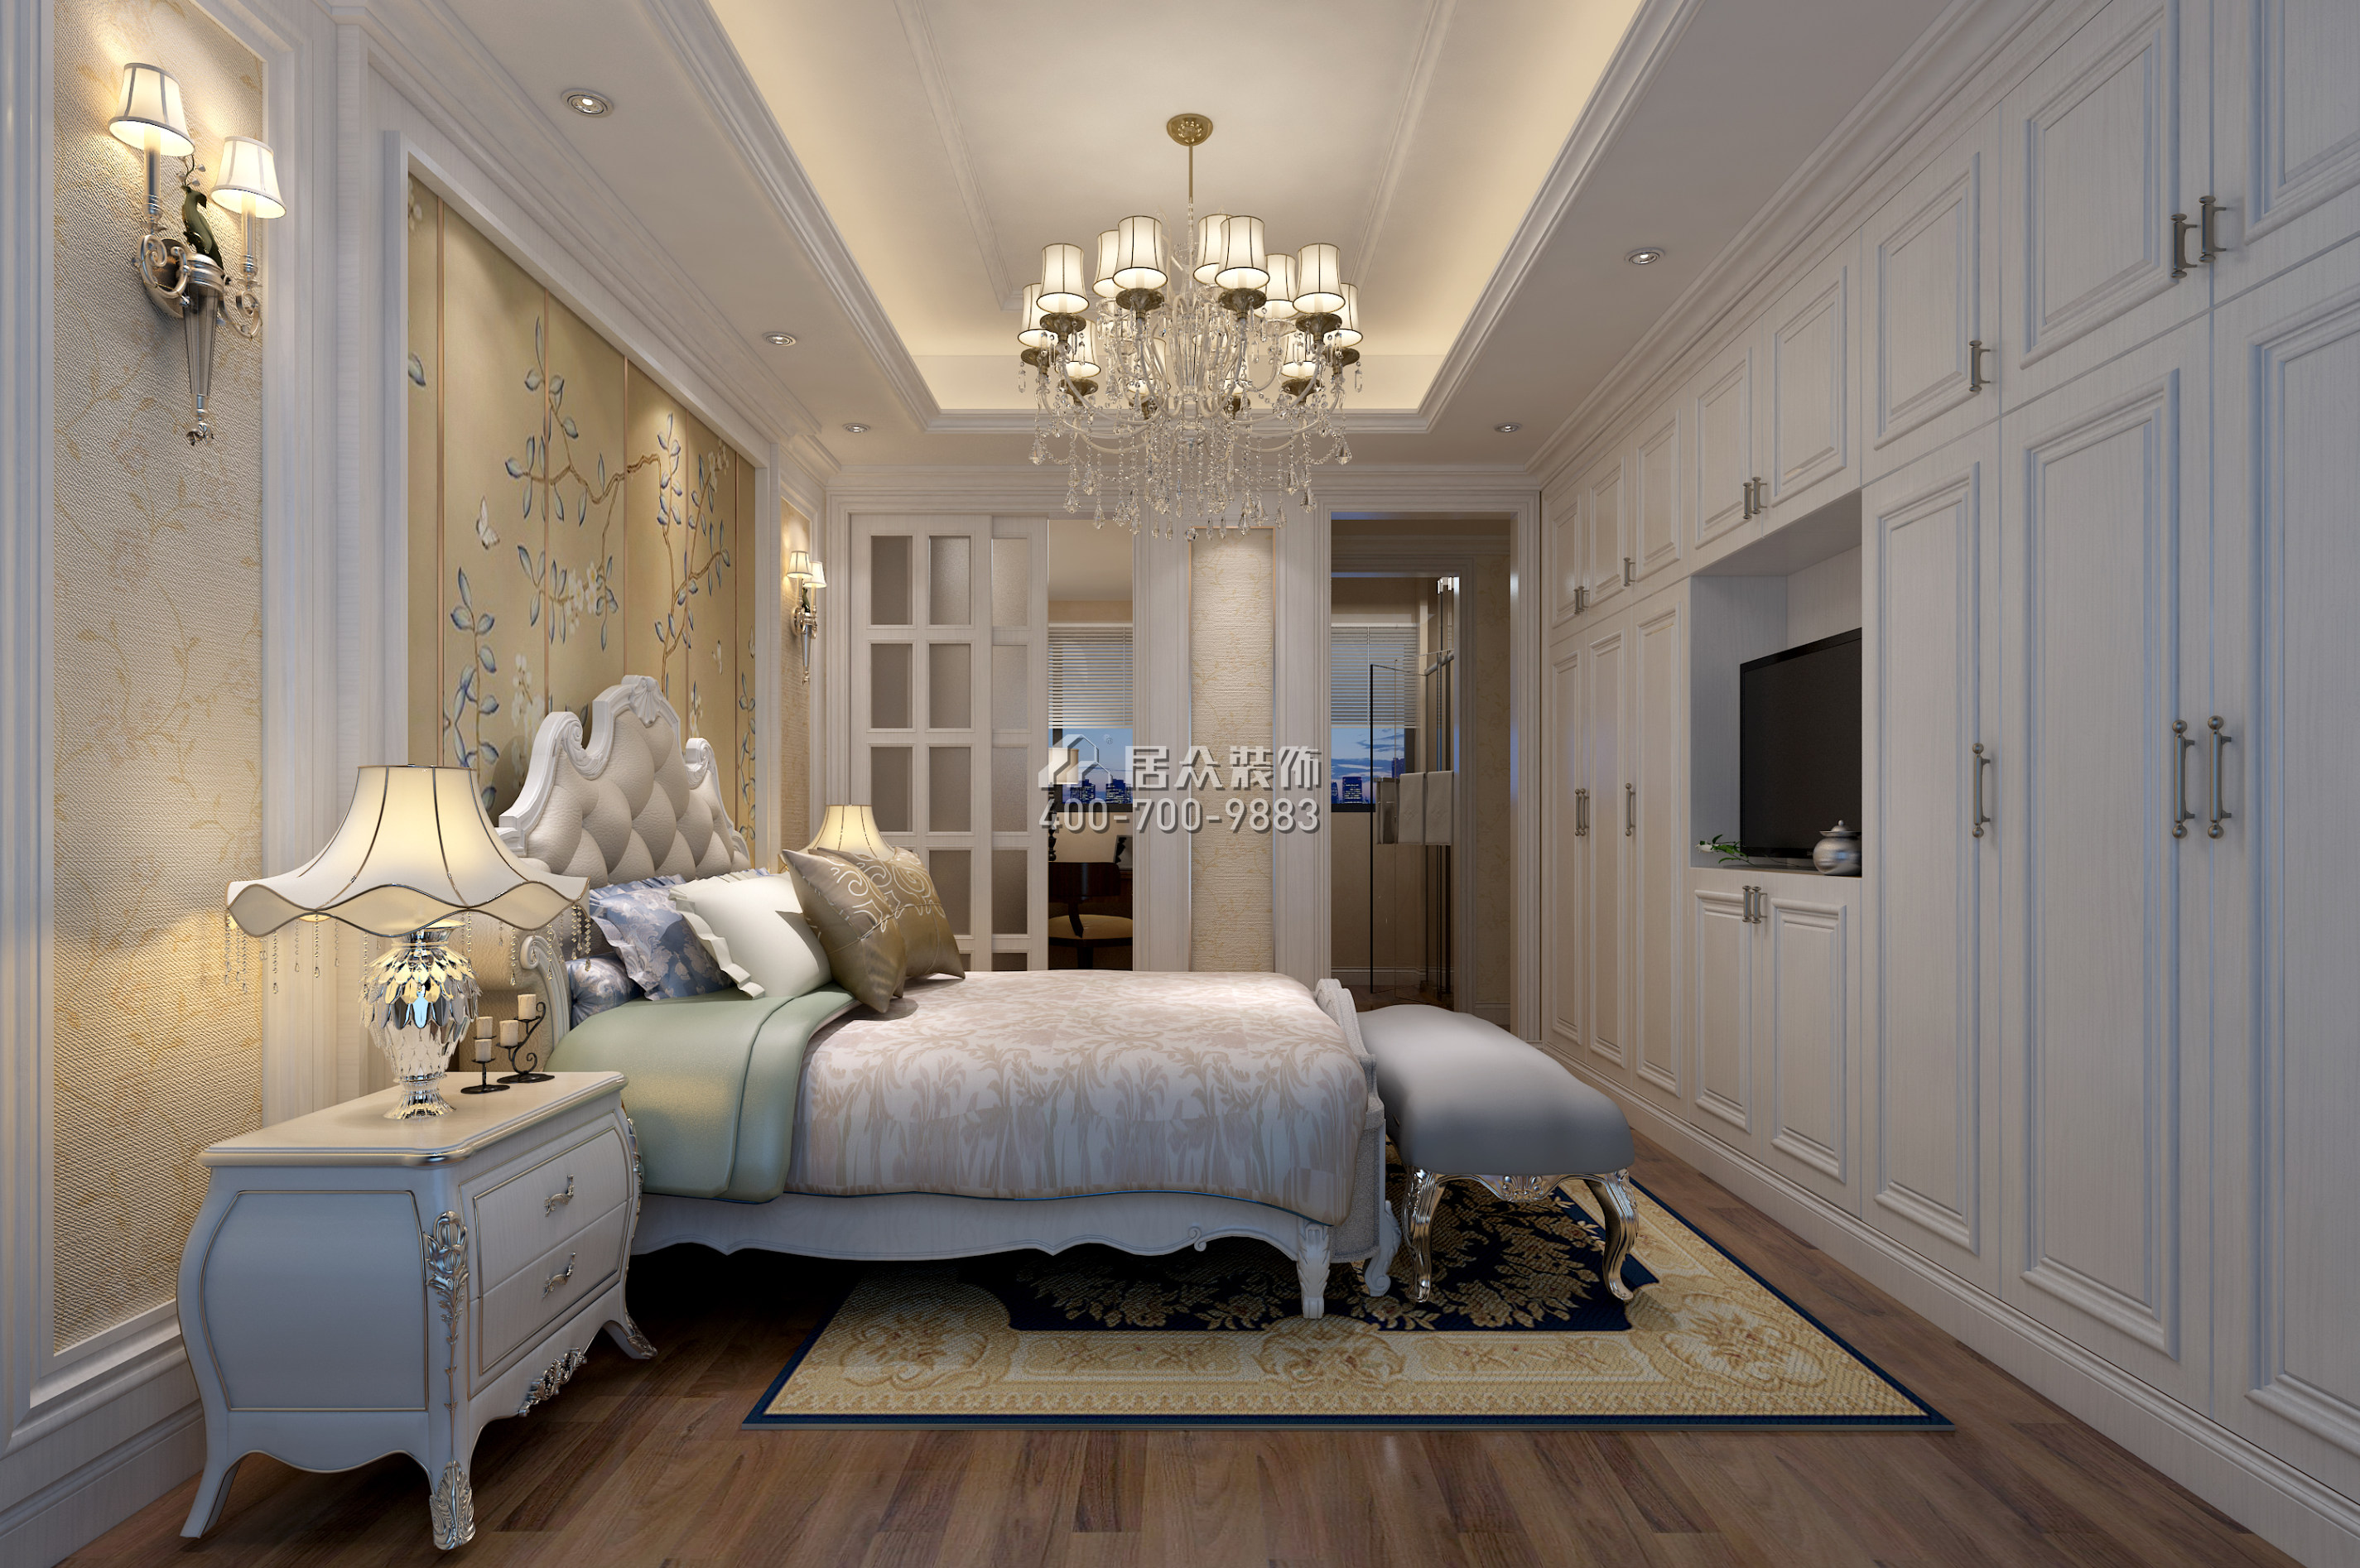 南海玫瑰園125平方米現代簡約風格平層戶型臥室裝修效果圖